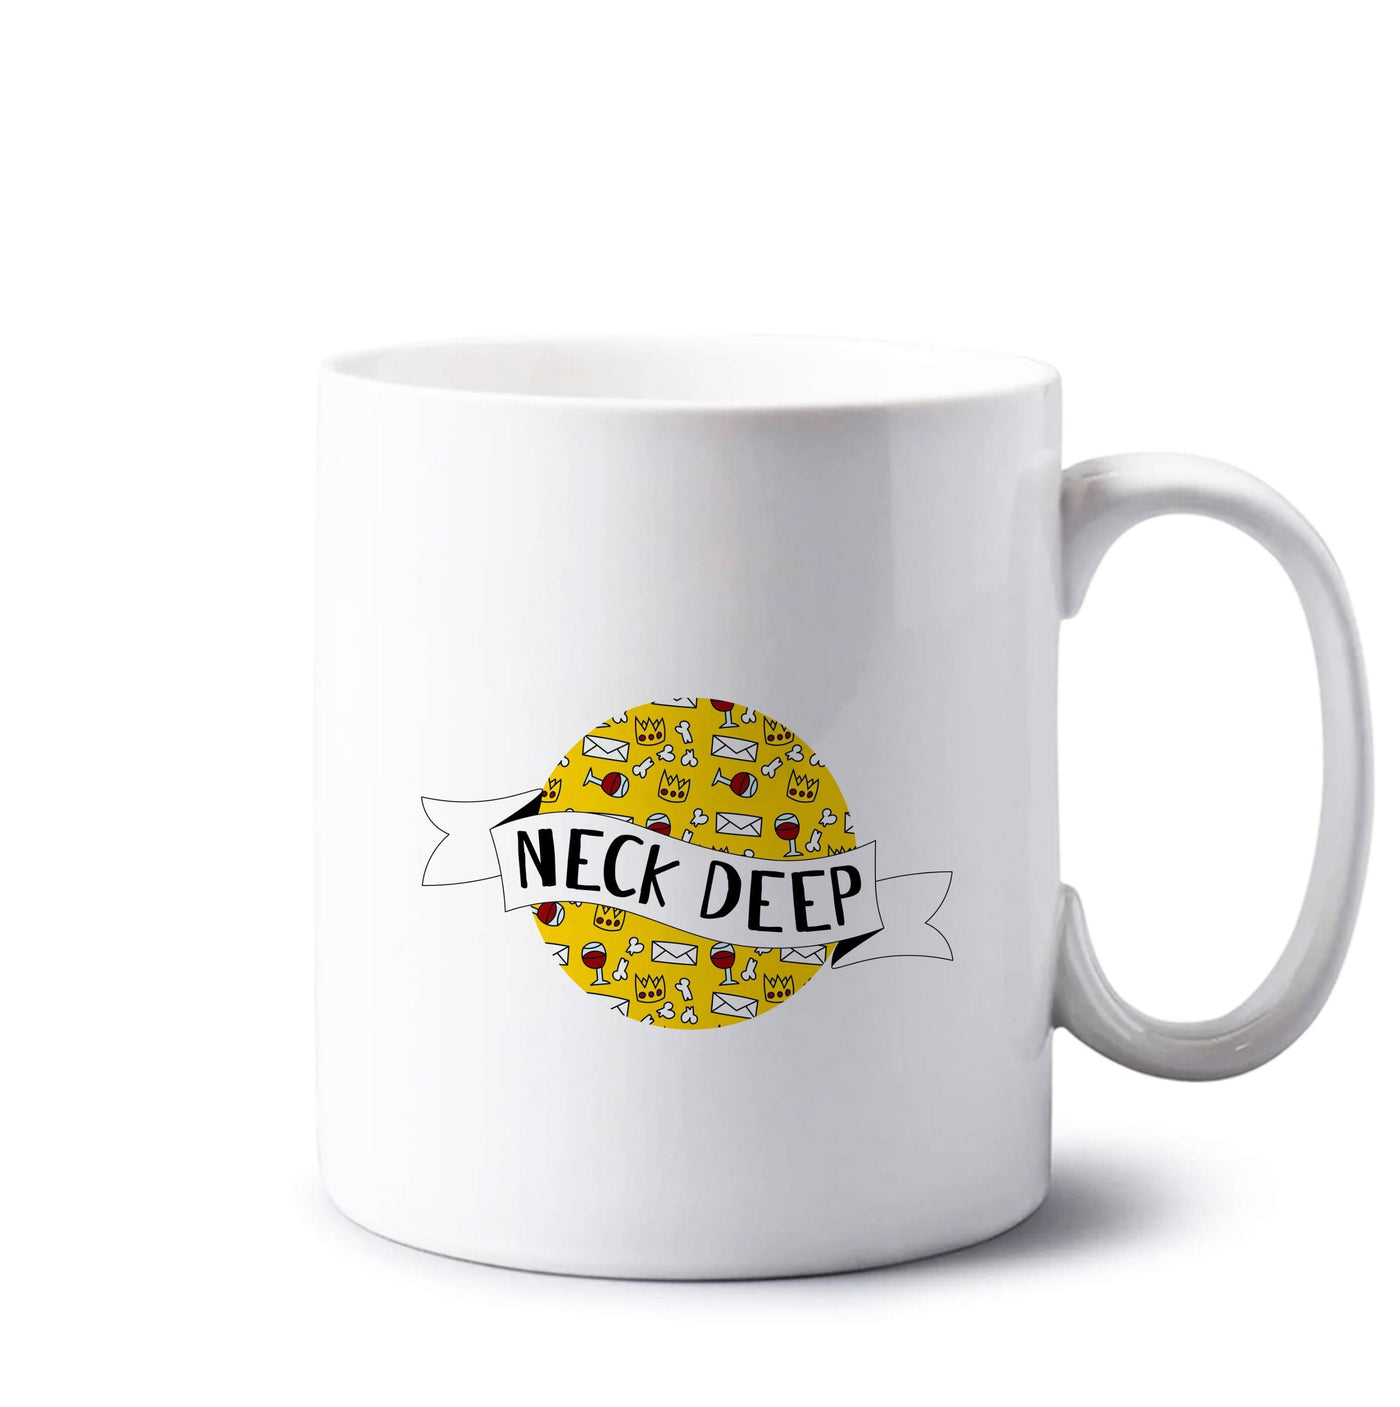 Neck Deep - Festival Mug